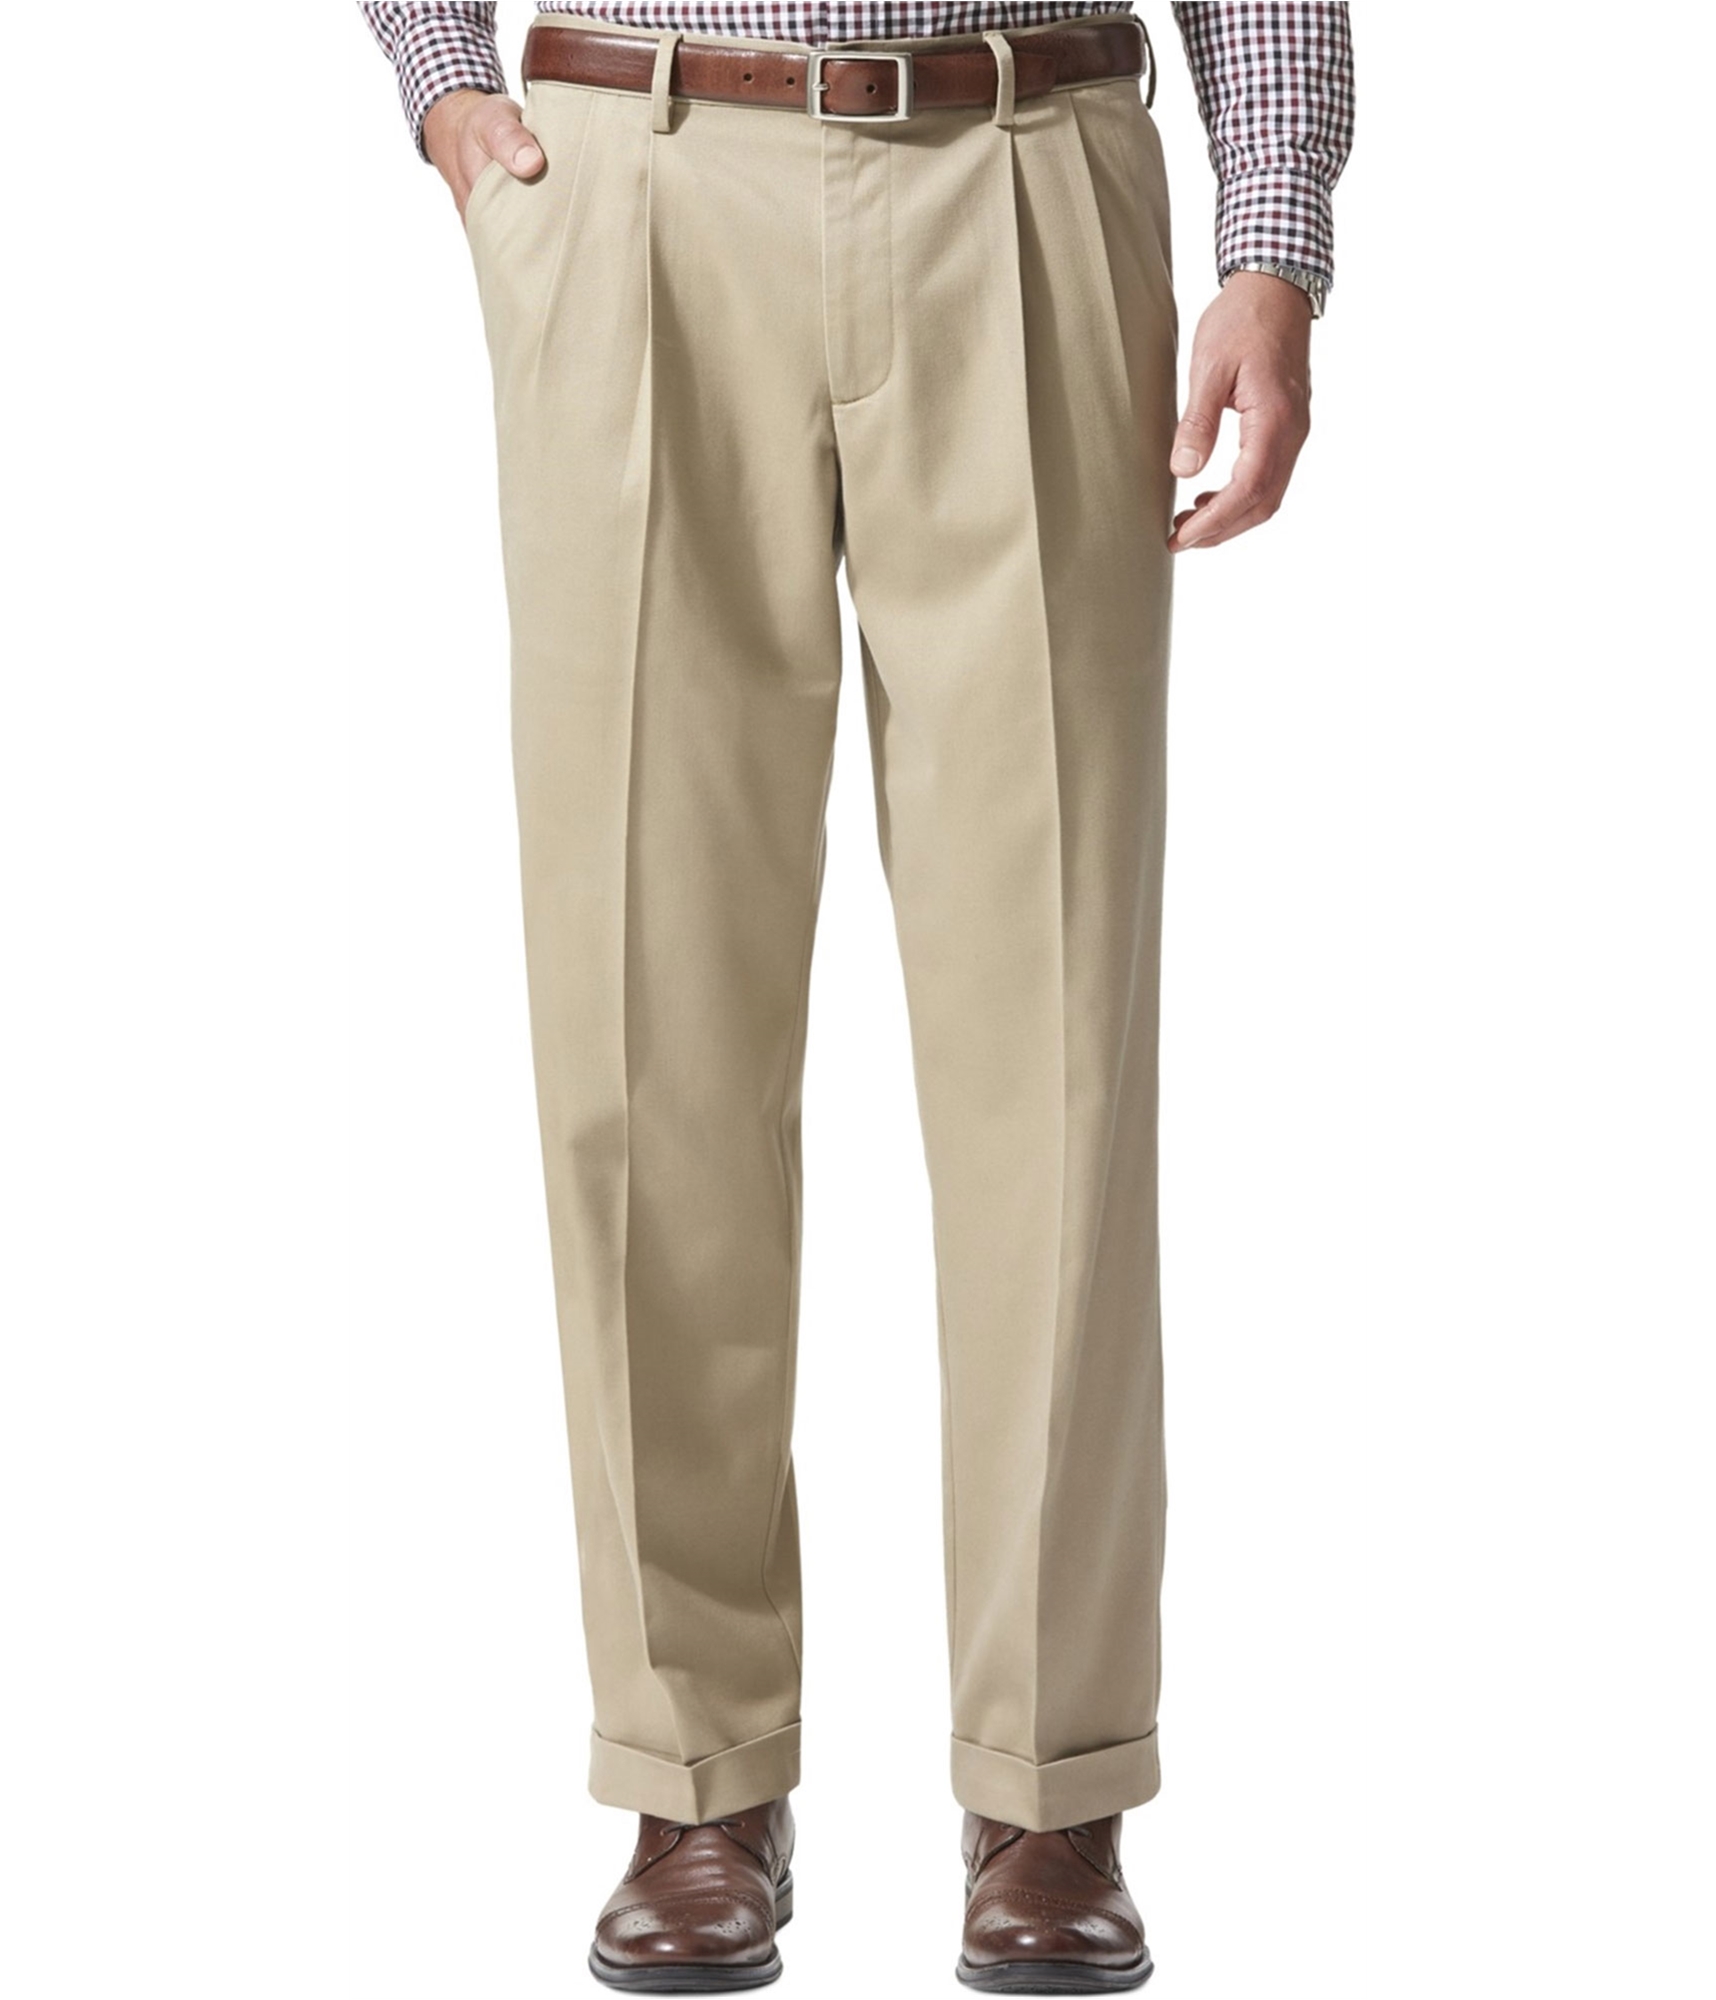 Geoffrey Beene Mens Comfort Casual Trouser Pants, Beige, 36W x 32L | eBay